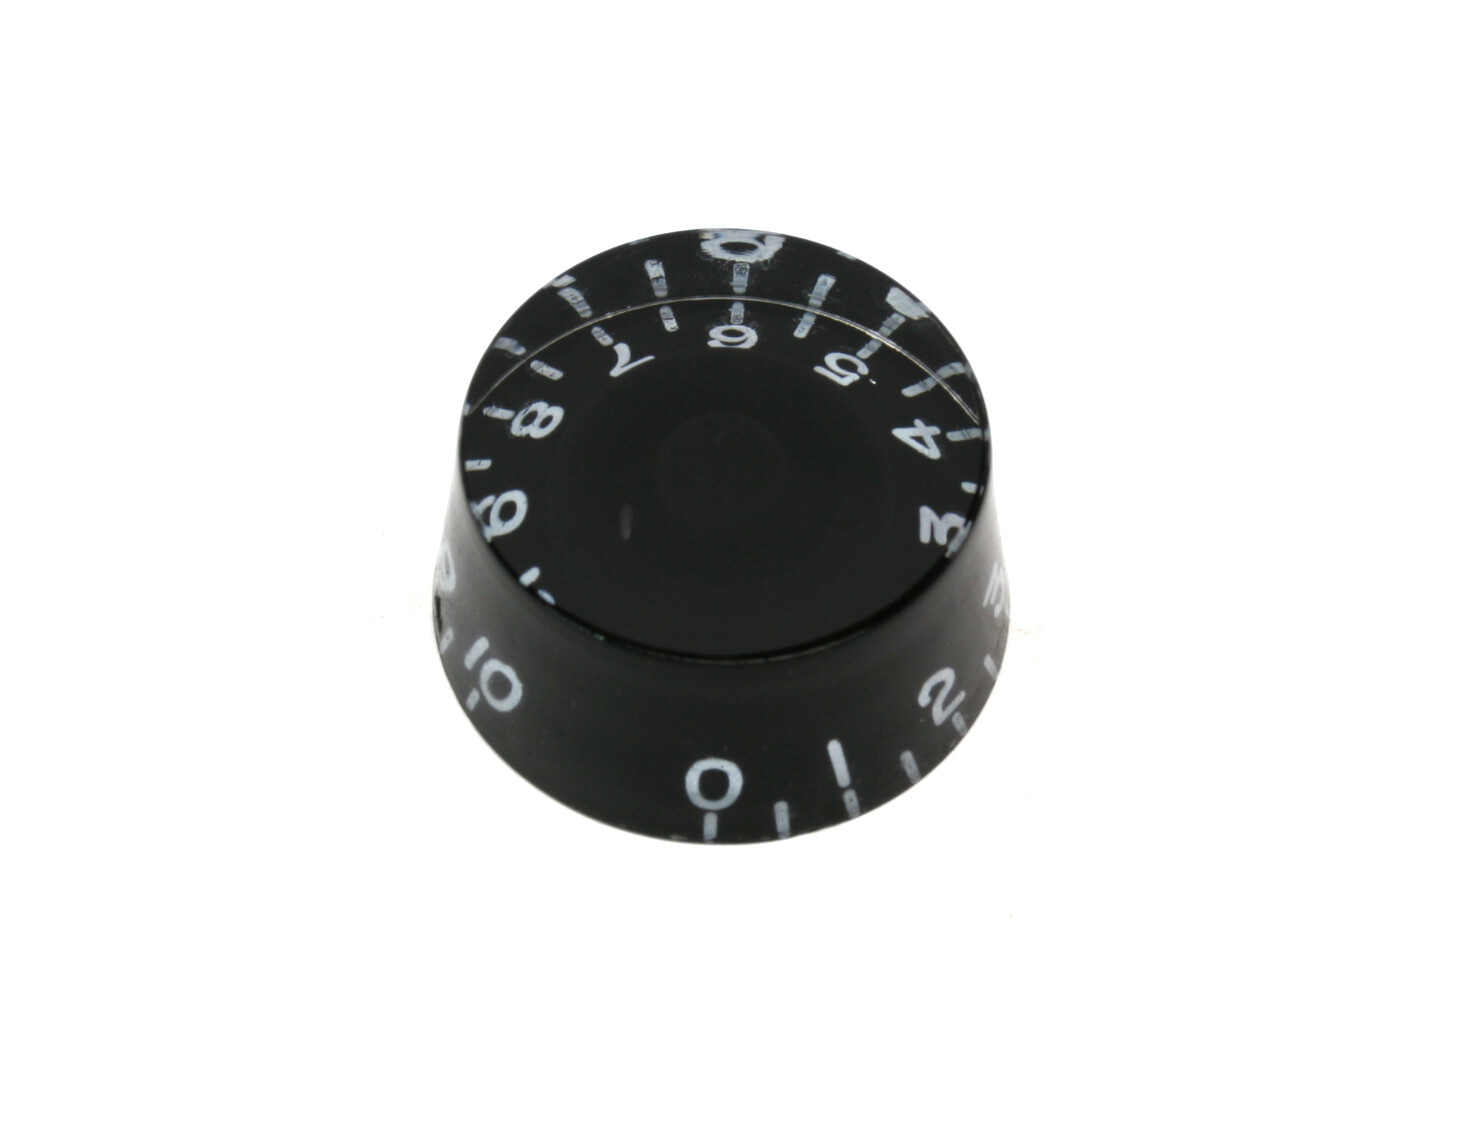 Black Speed knobs vintage style numbers, fits USA split shaft pots.